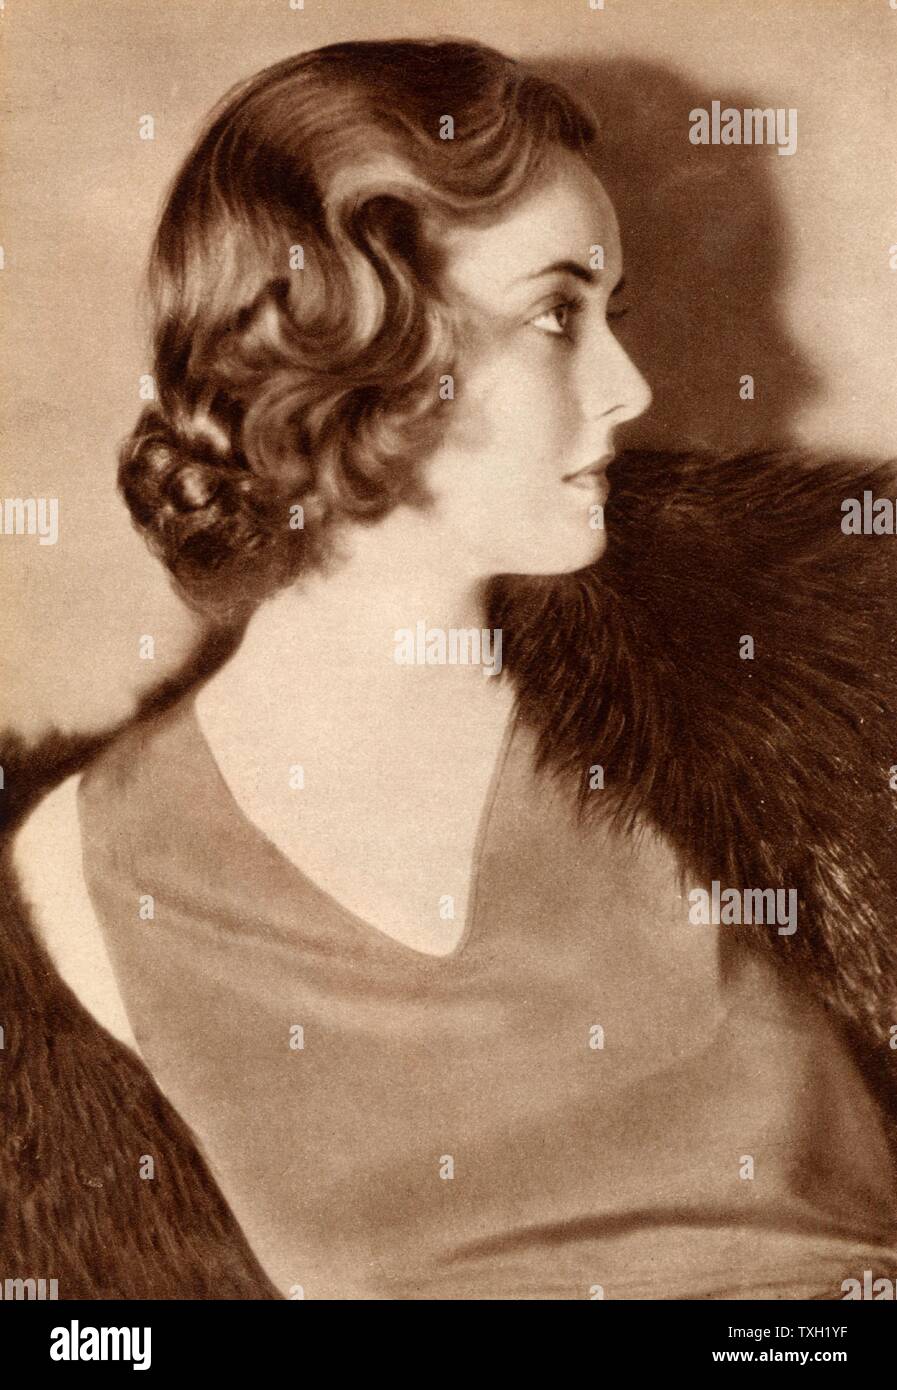 Bette Davis (1908-1989) amerikanischen Hollywood-Schauspielerin und Filmstar, als eine junge Frau. Zu fotografieren. Halbton. Stockfoto